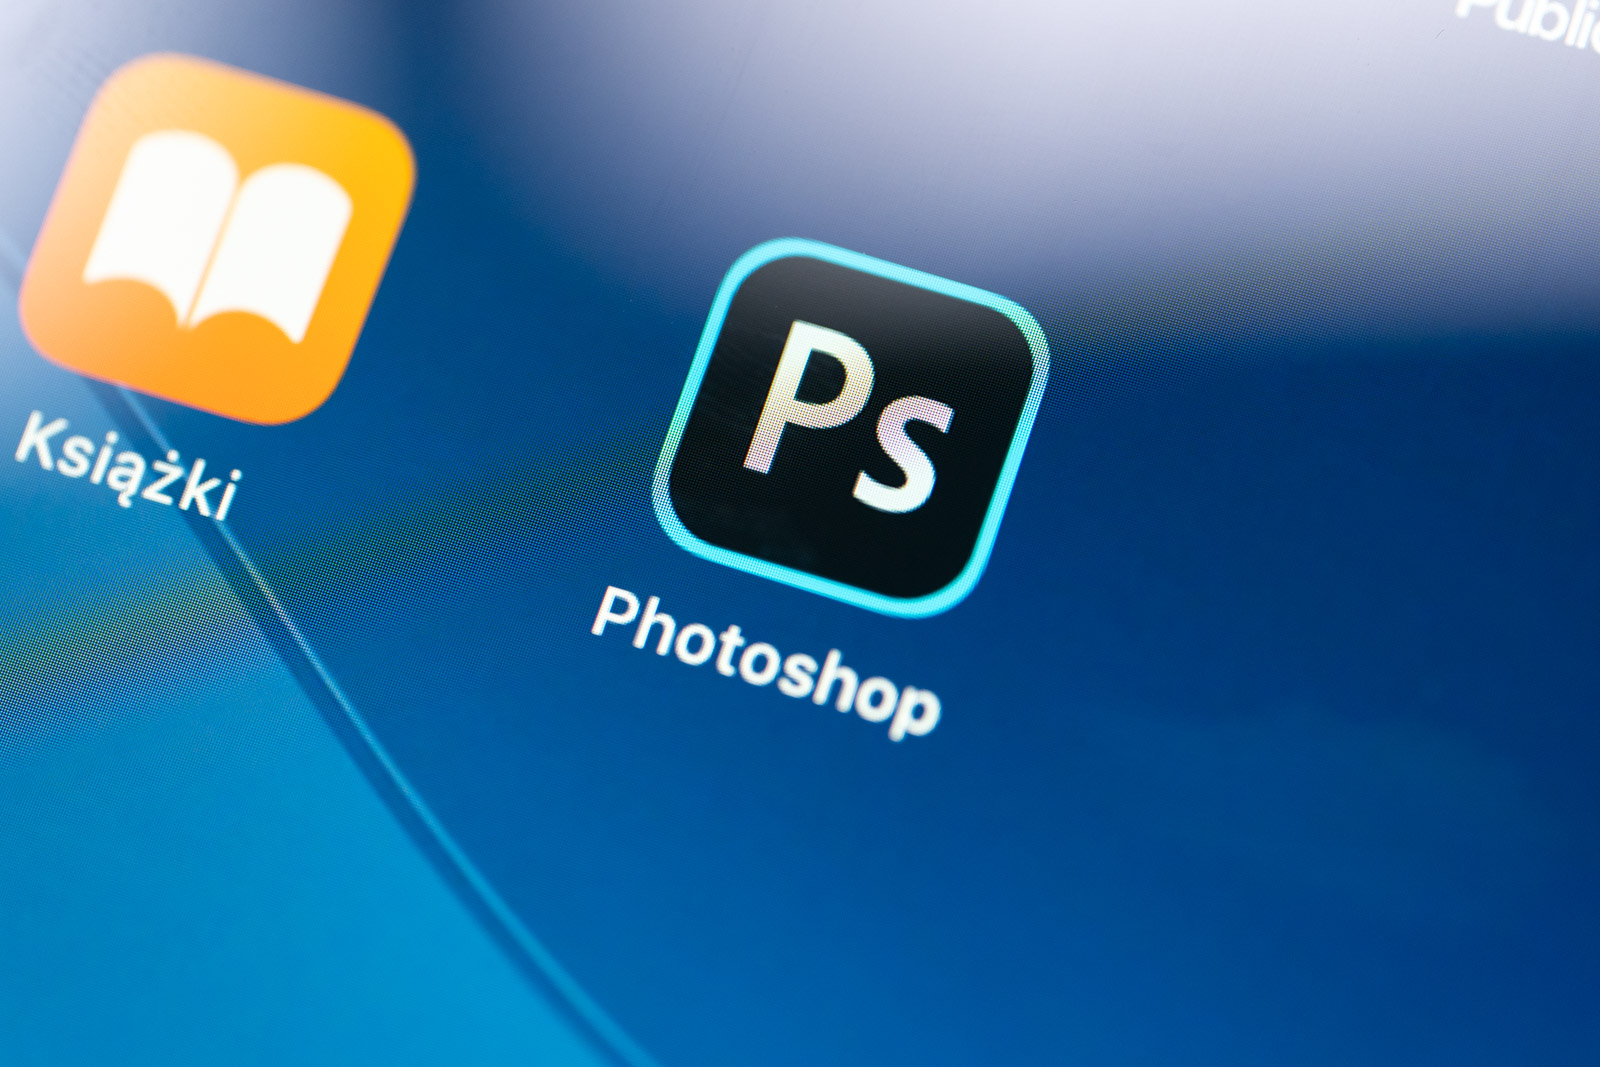 Adobe-k Photoshop eta Fresco uztartzen ditu iPad-en plan berri batean. Handia, baina grafikoek dagoeneko Procreate dute